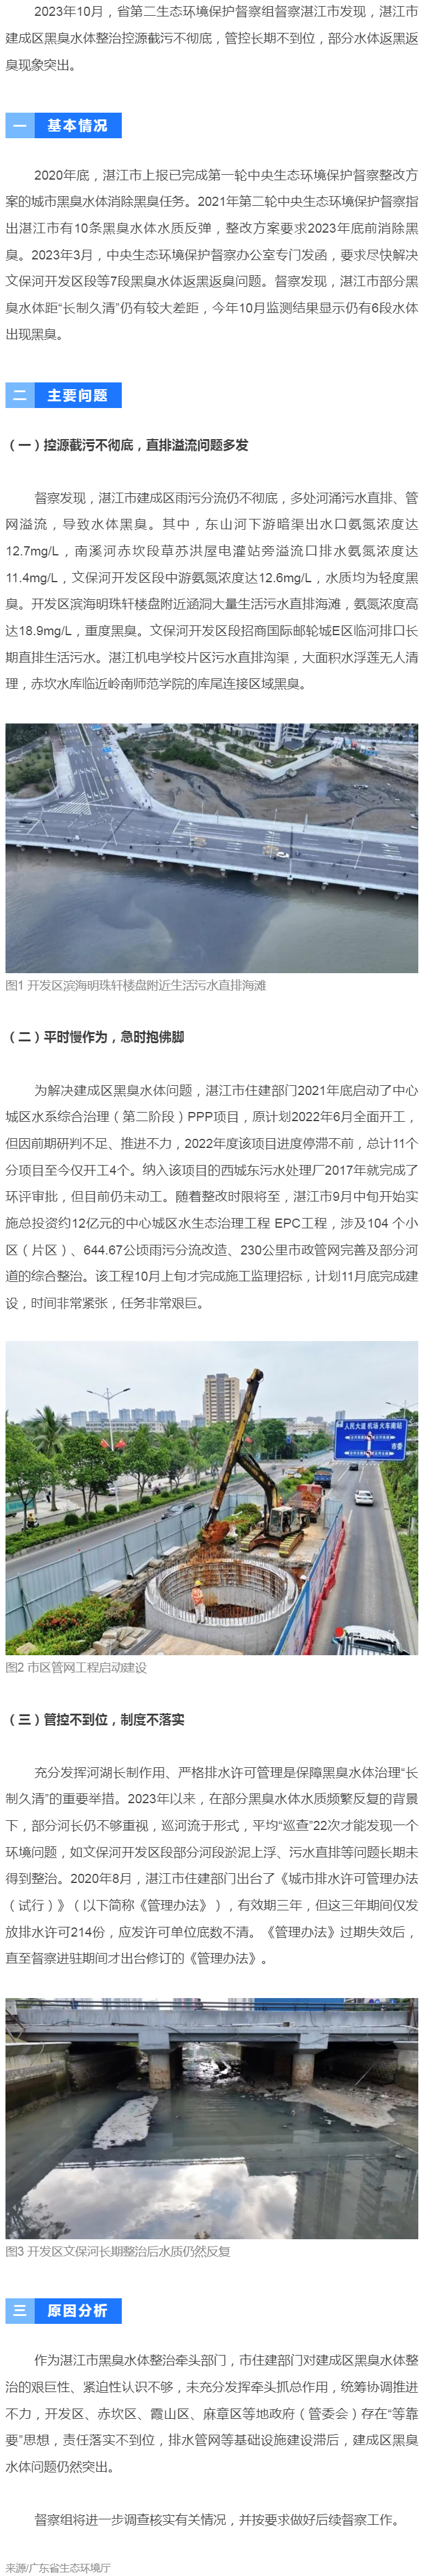 【典型案例】湛江市建成区黑臭水体整治措施落实不力 部分已整治水体返黑返臭.png